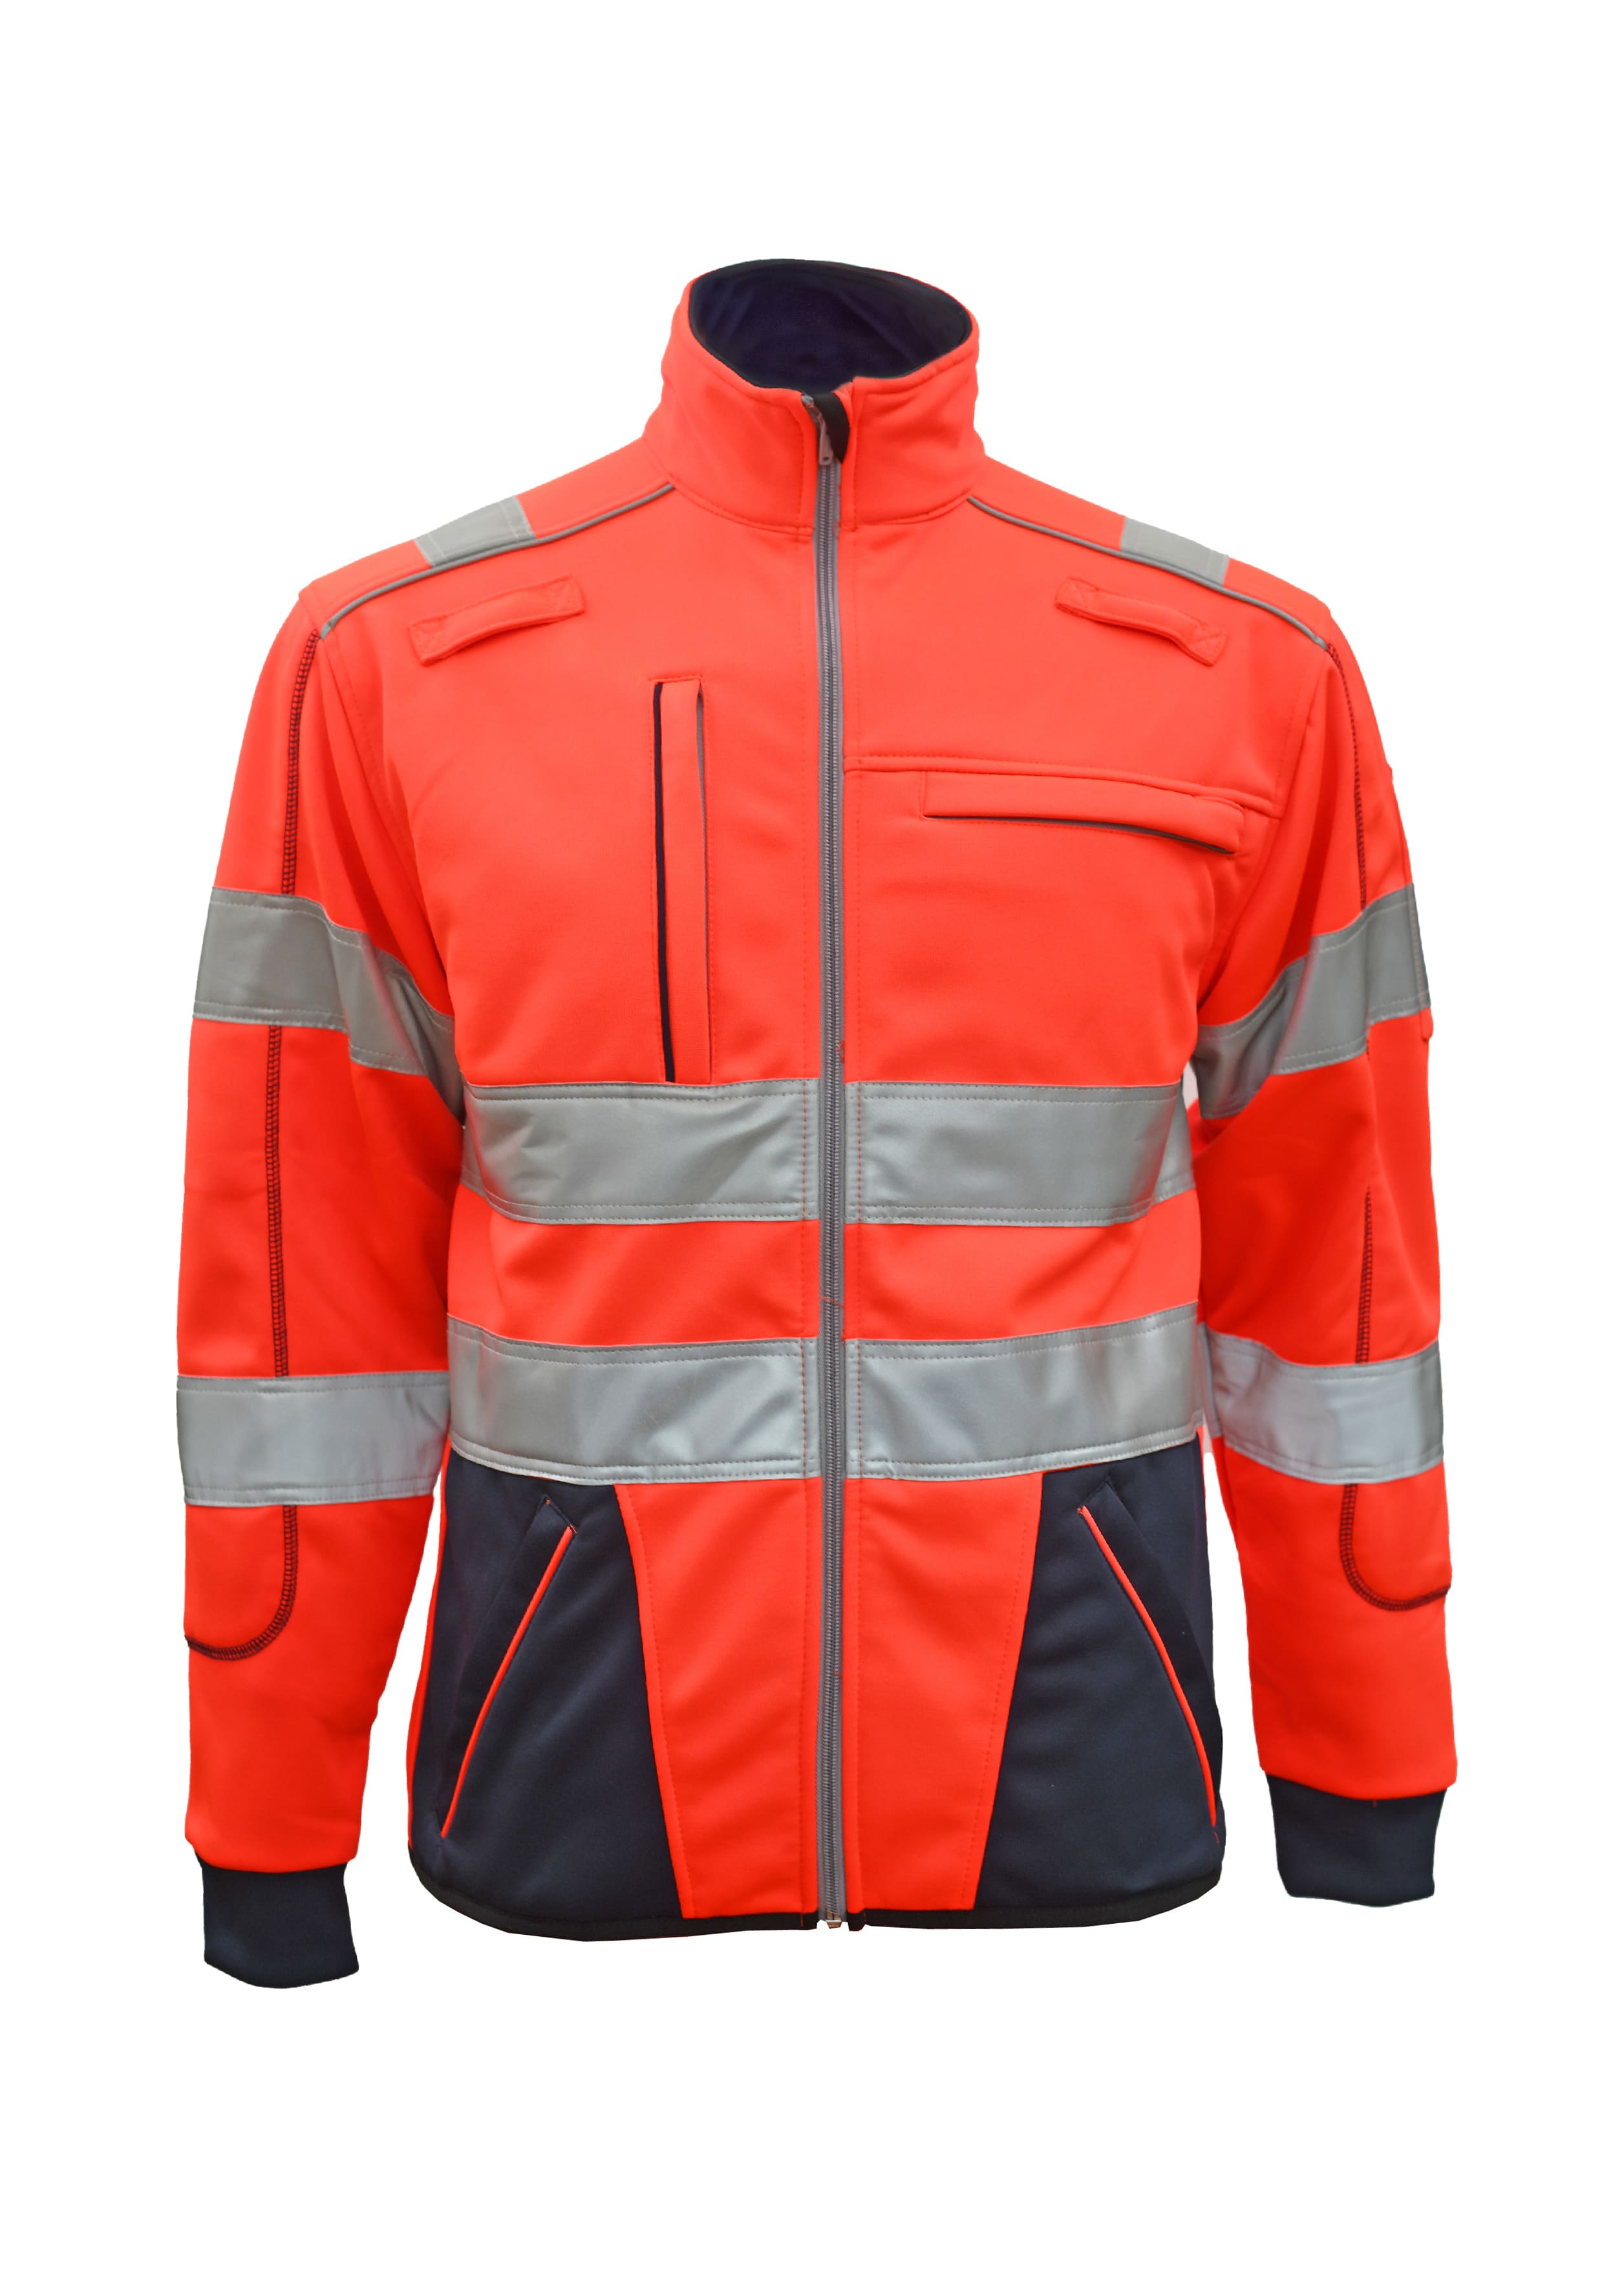 Rescuewear Sweatjacke Dynamic HiVis Klasse 3 Marineblau / Neon Rot - S